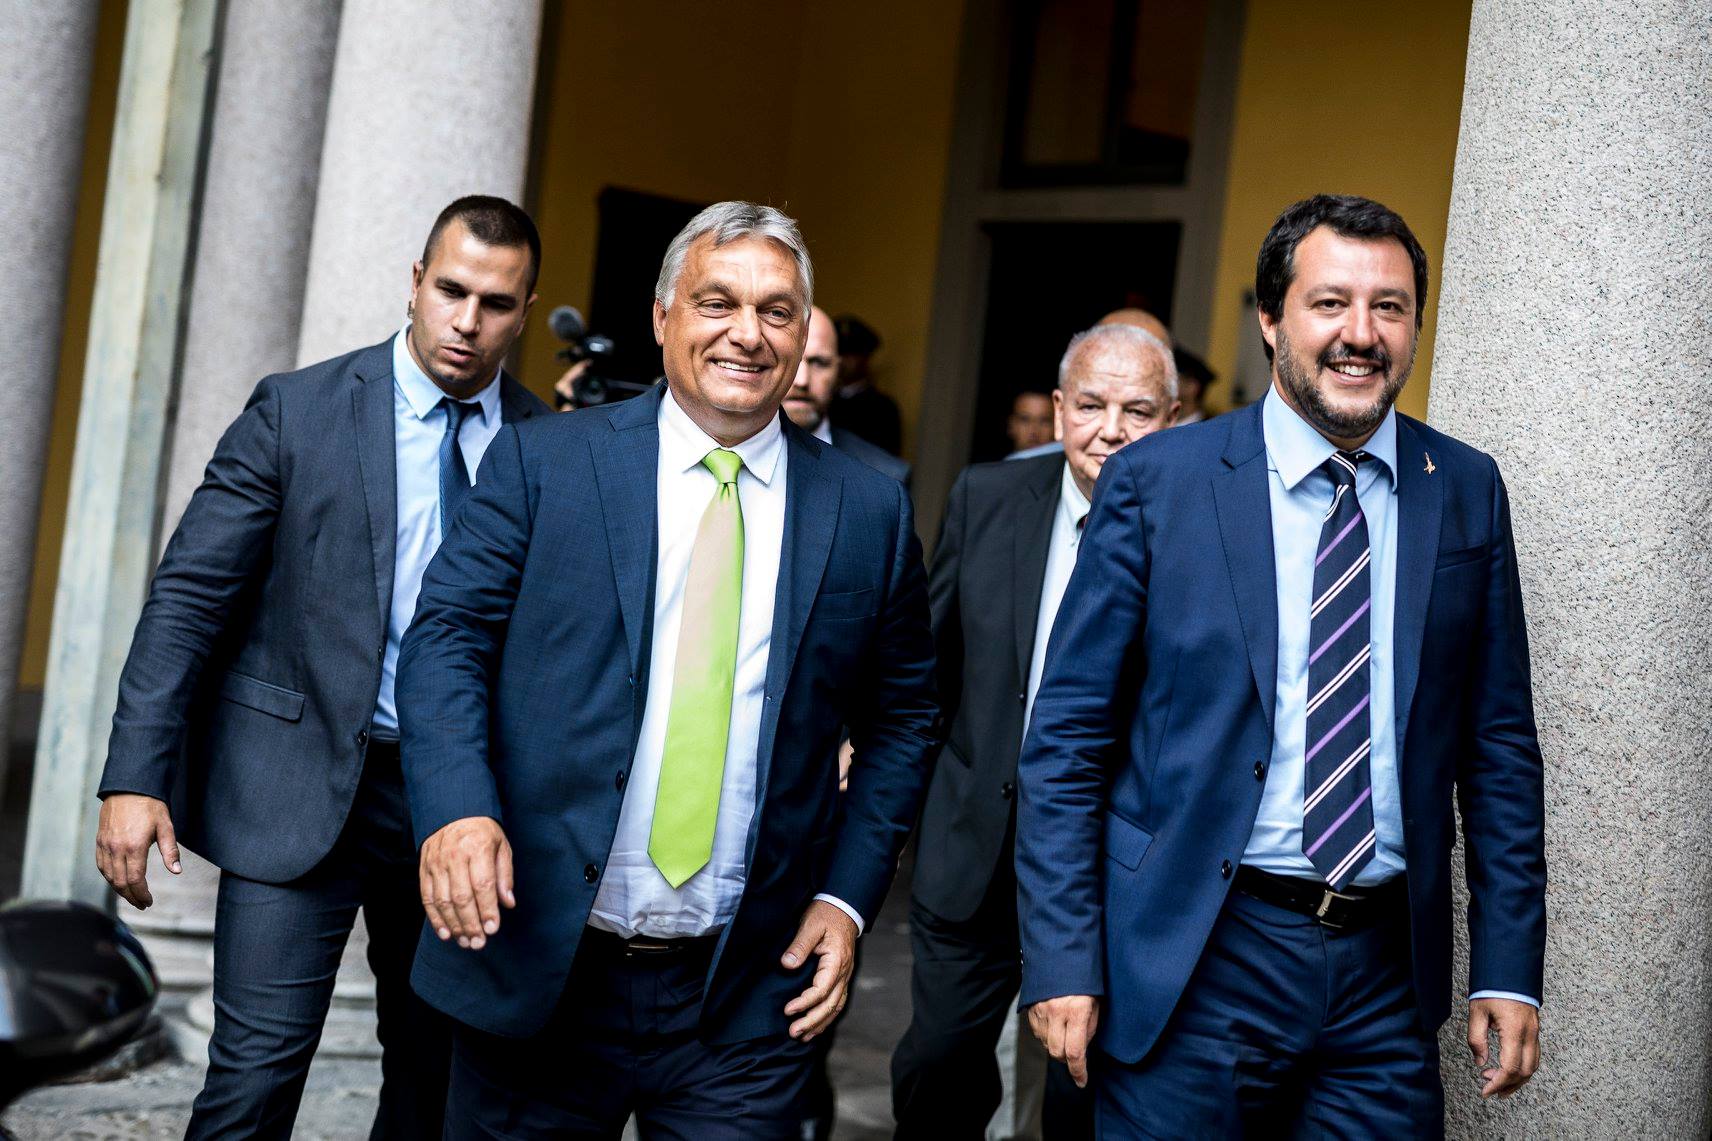 Salvini a határait ellenőrző, kultúráját védő Európát akar építeni Orbán Viktorral